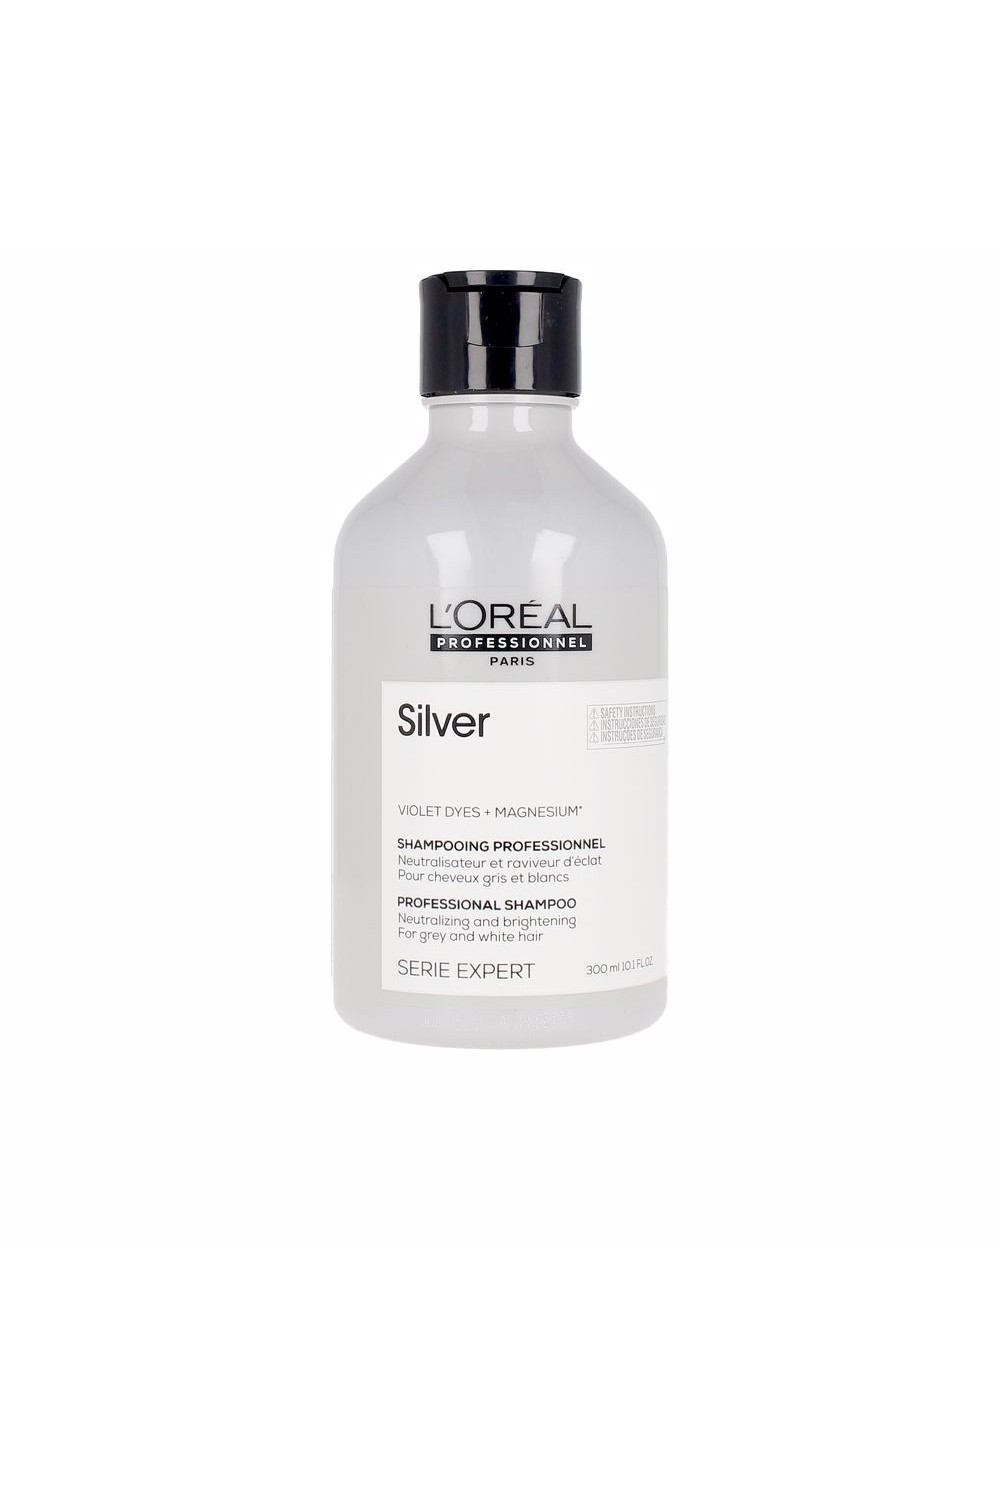 L'oreal Professionnel Silver Professional Shampoo 300ml